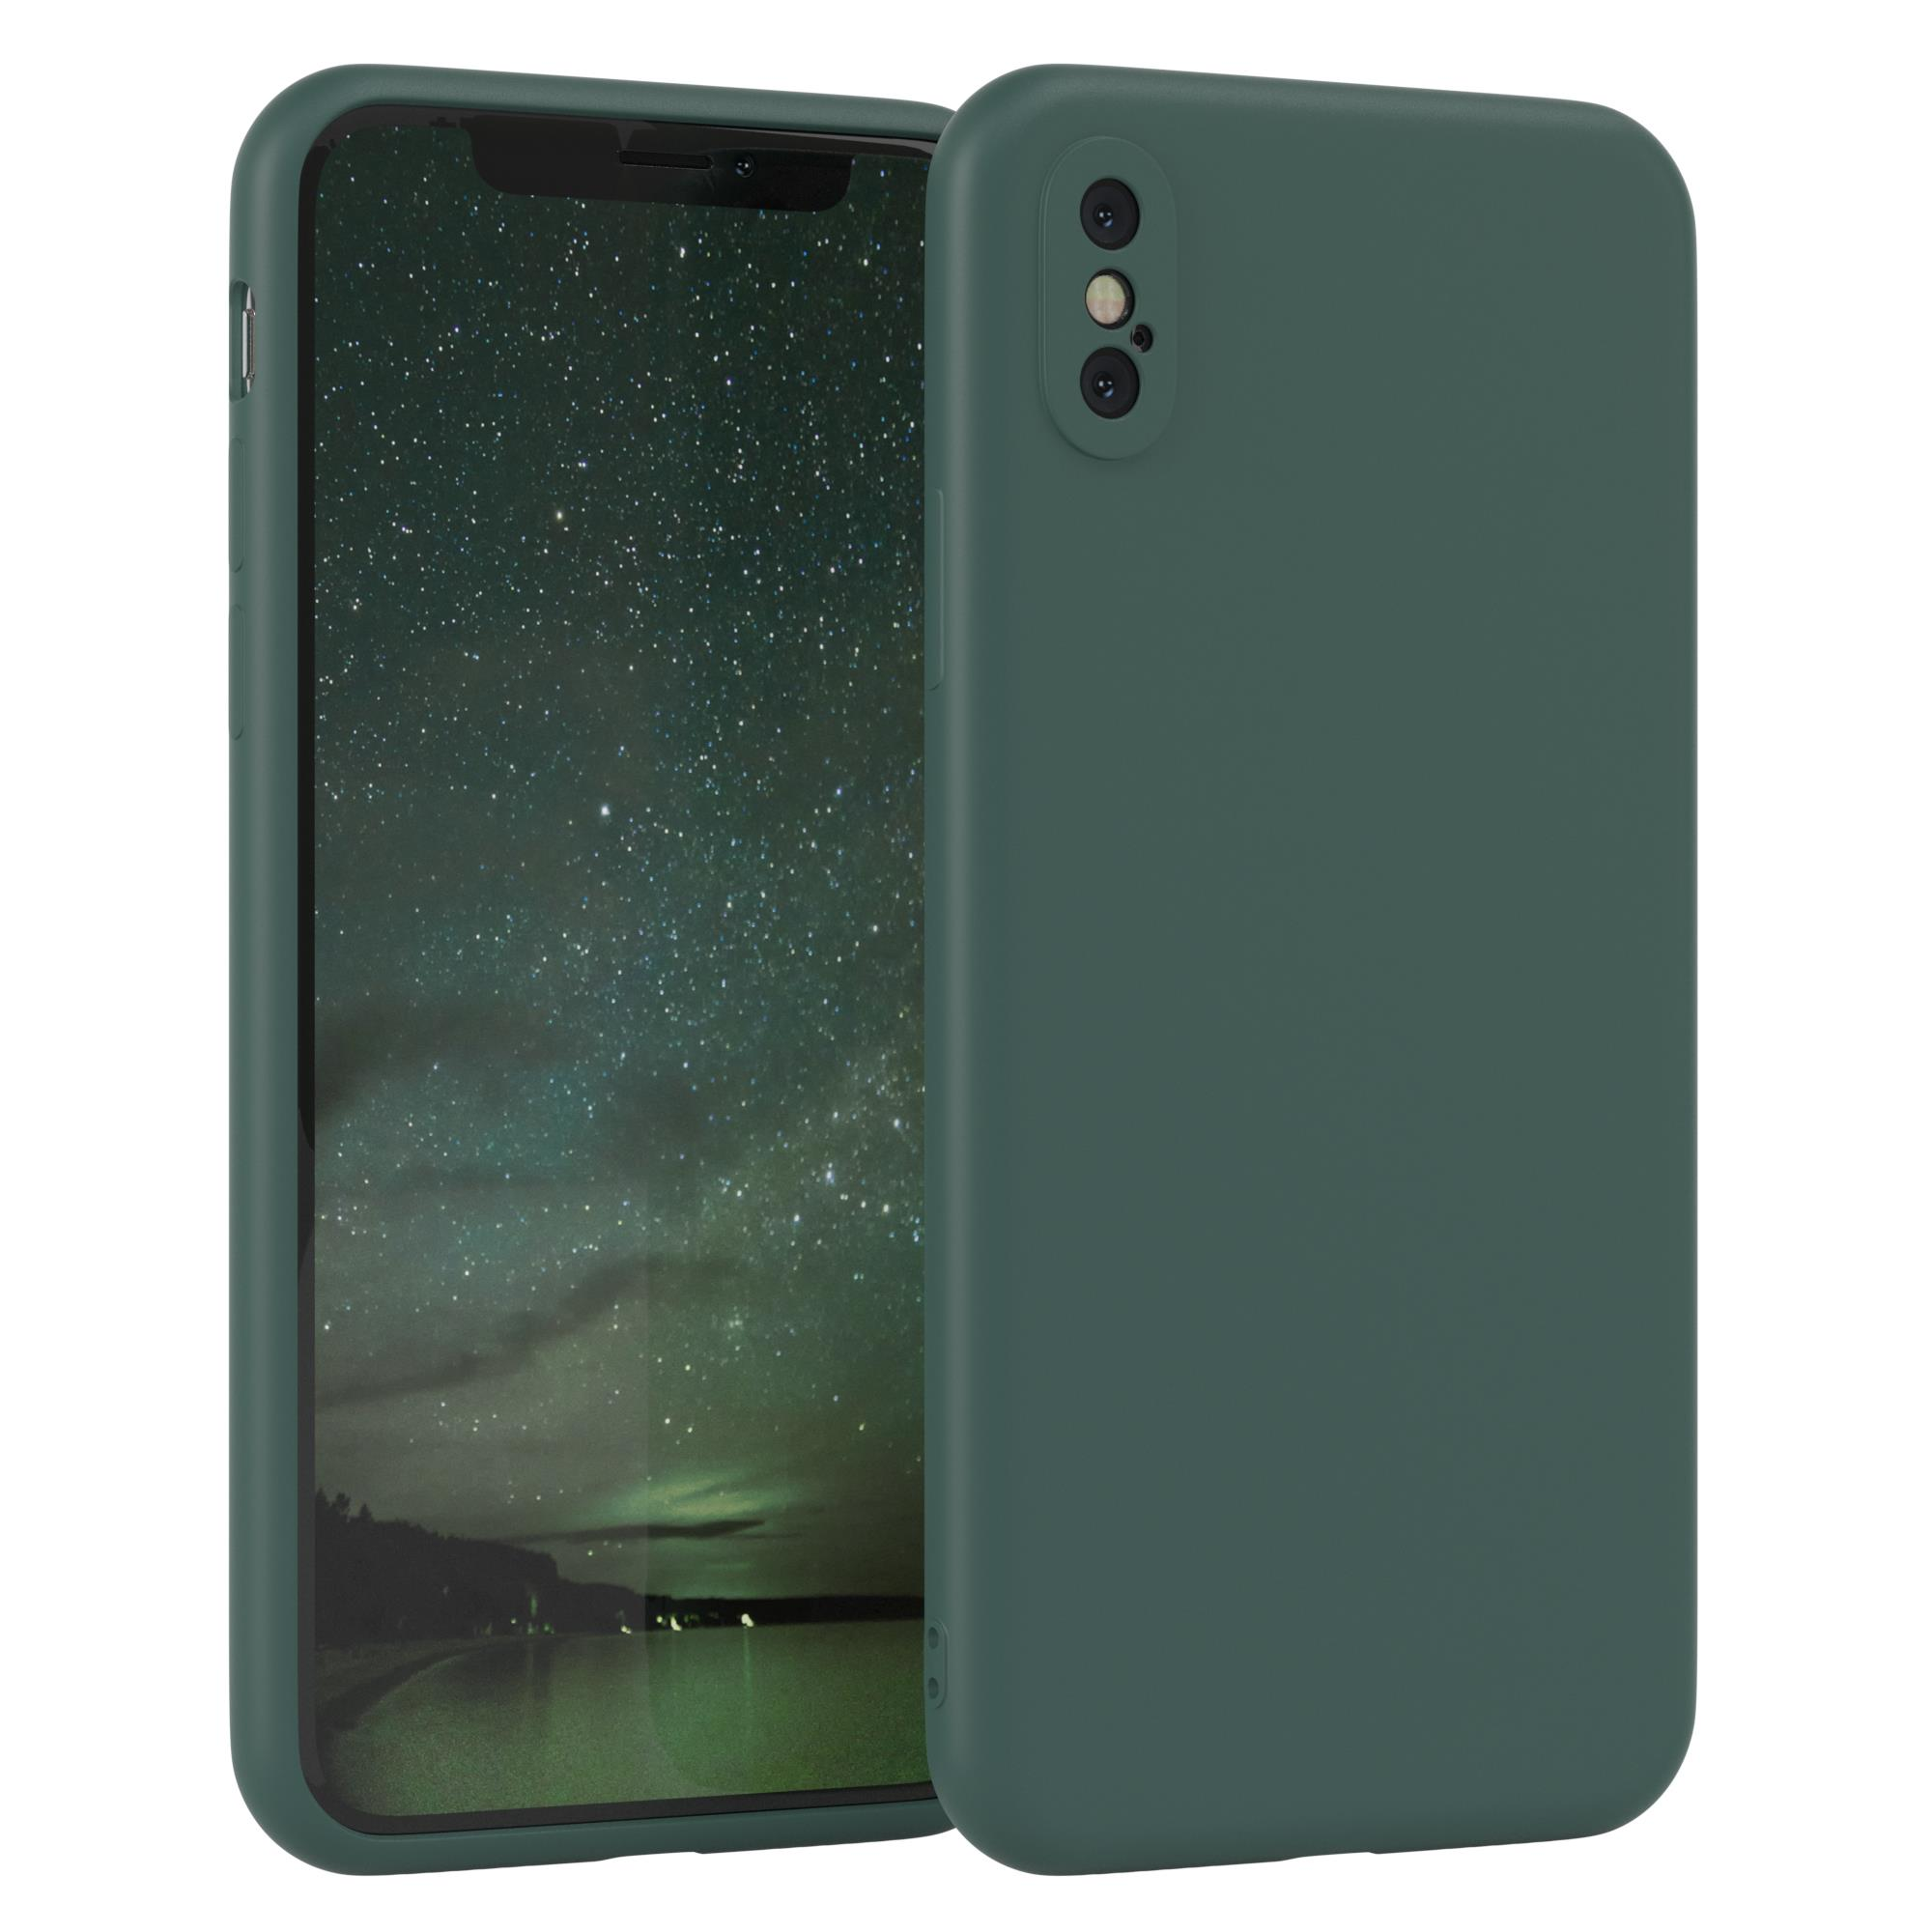 EAZY CASE Handycase XS Grün iPhone TPU / Matt, Max, Apple, Silikon Backcover, Nachtgrün